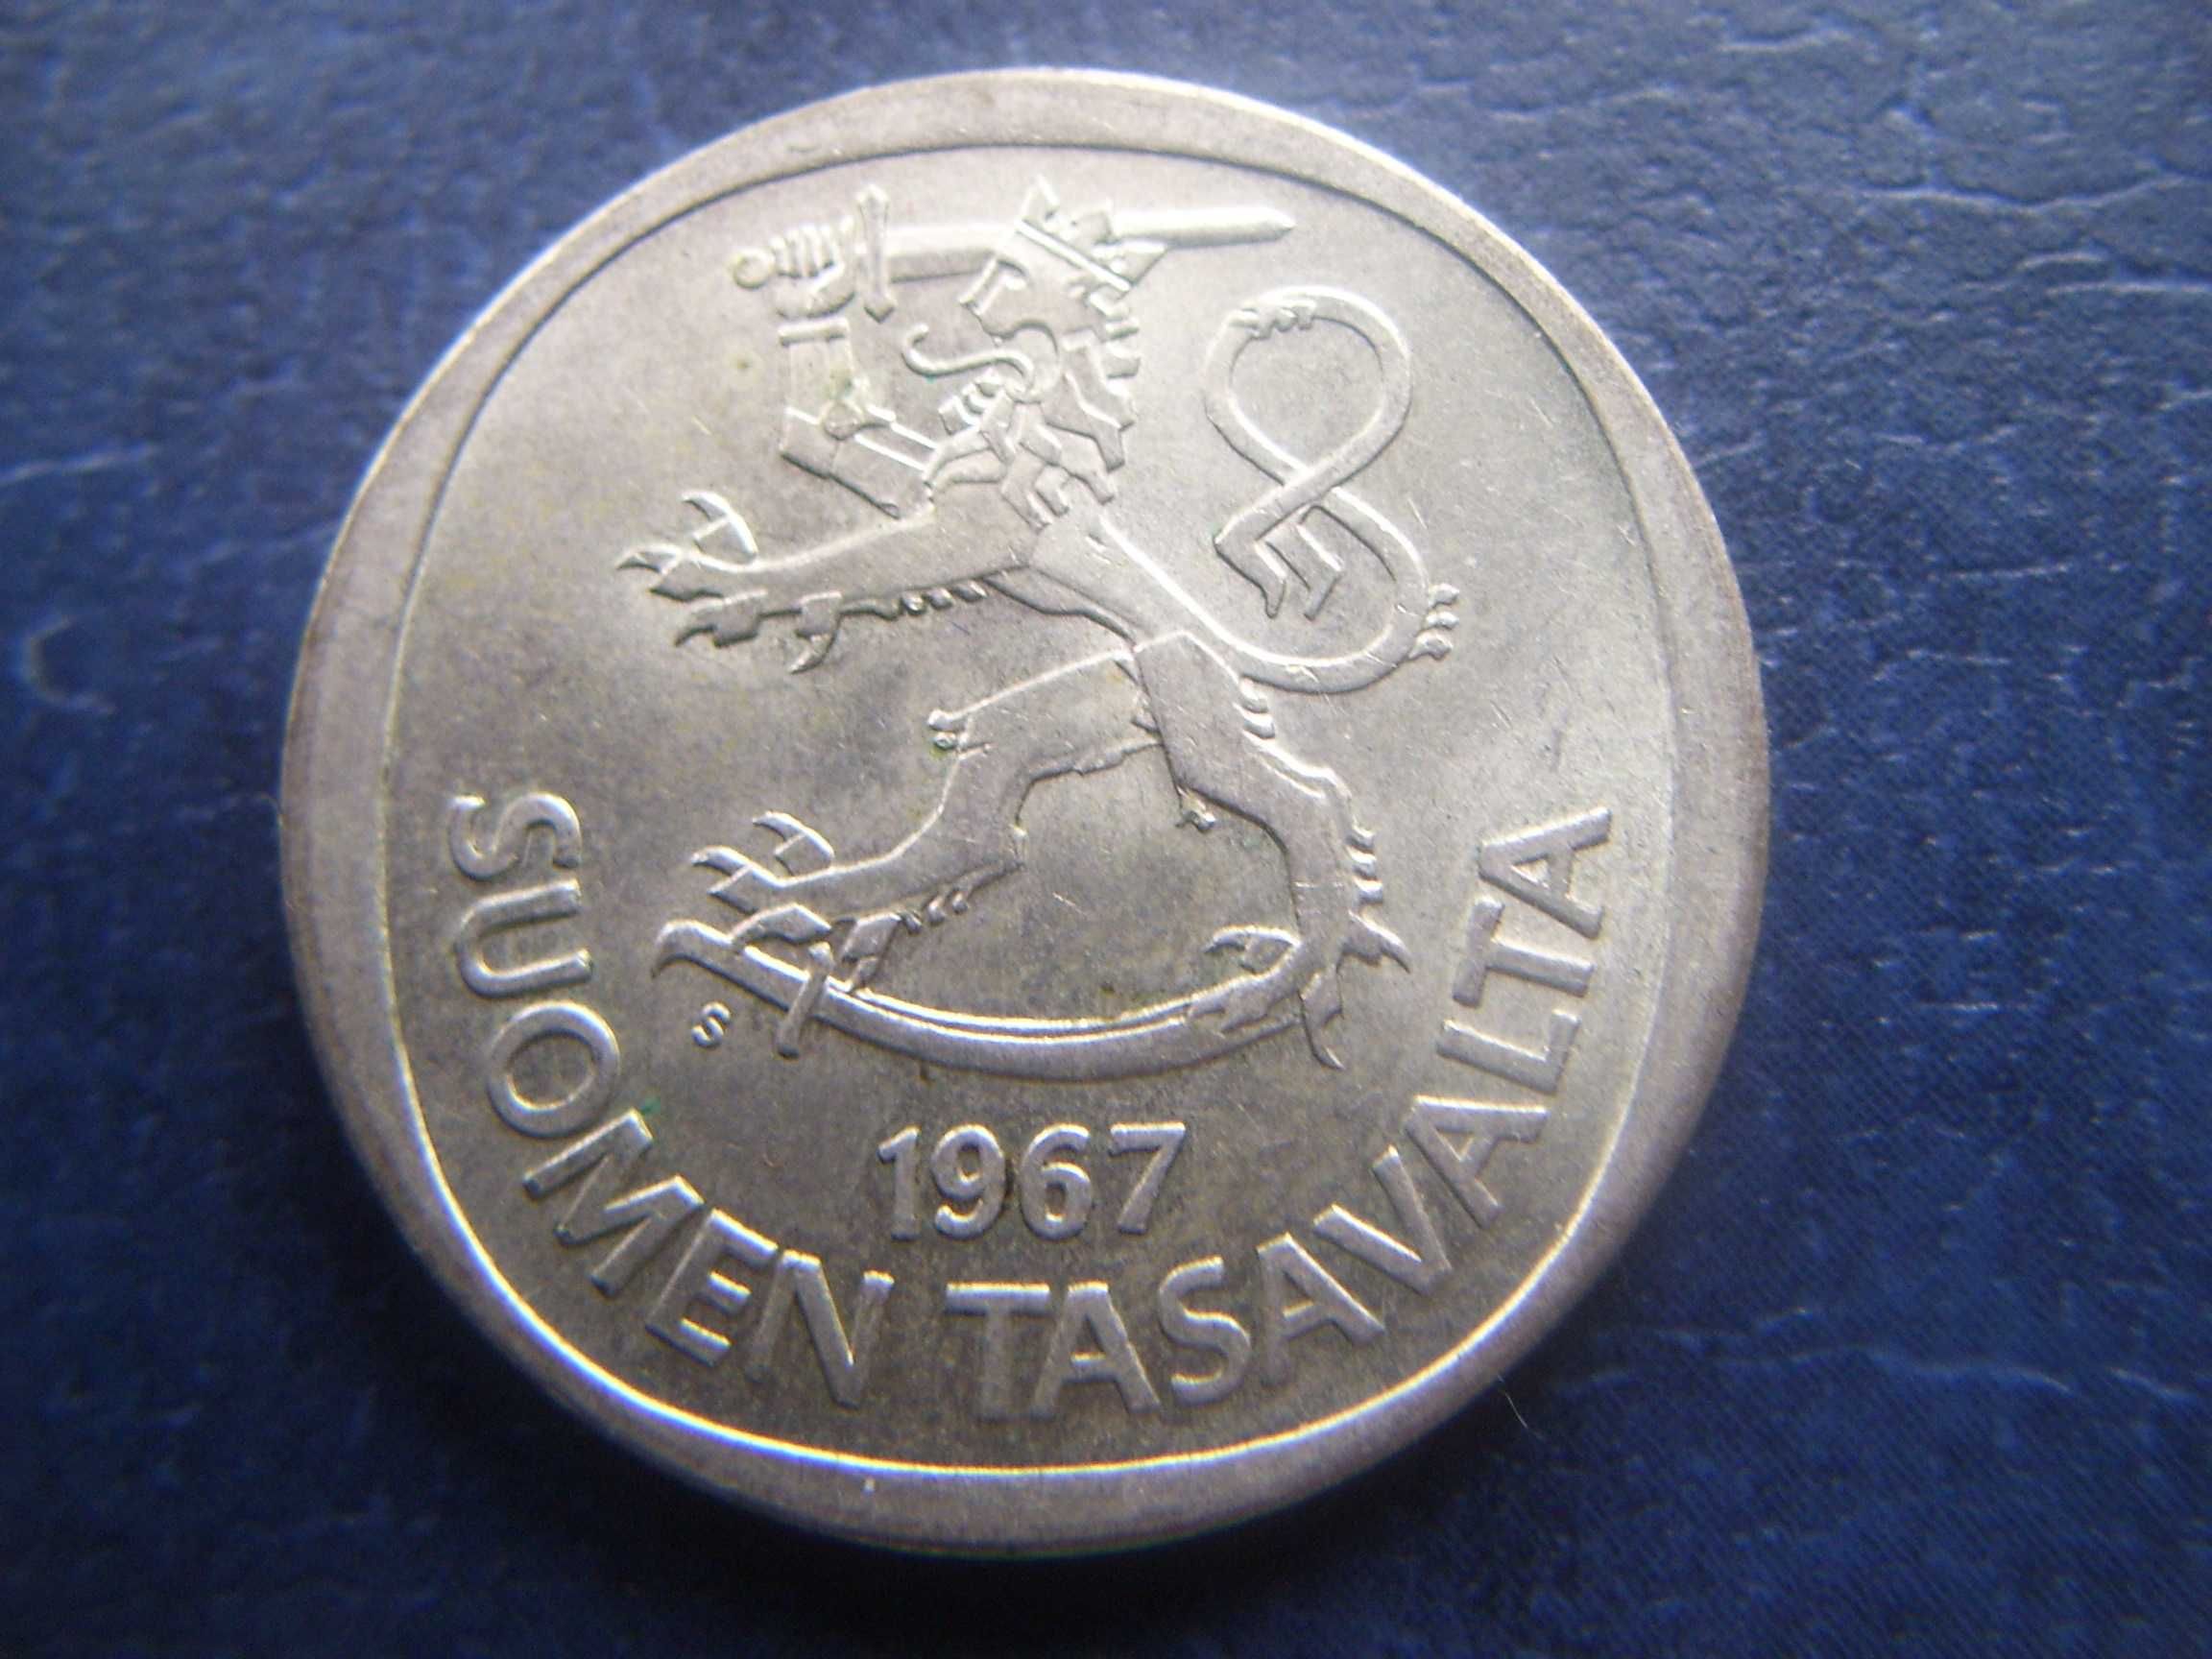 Stare monety 1 marka 1967 Finlandia srebro piękna